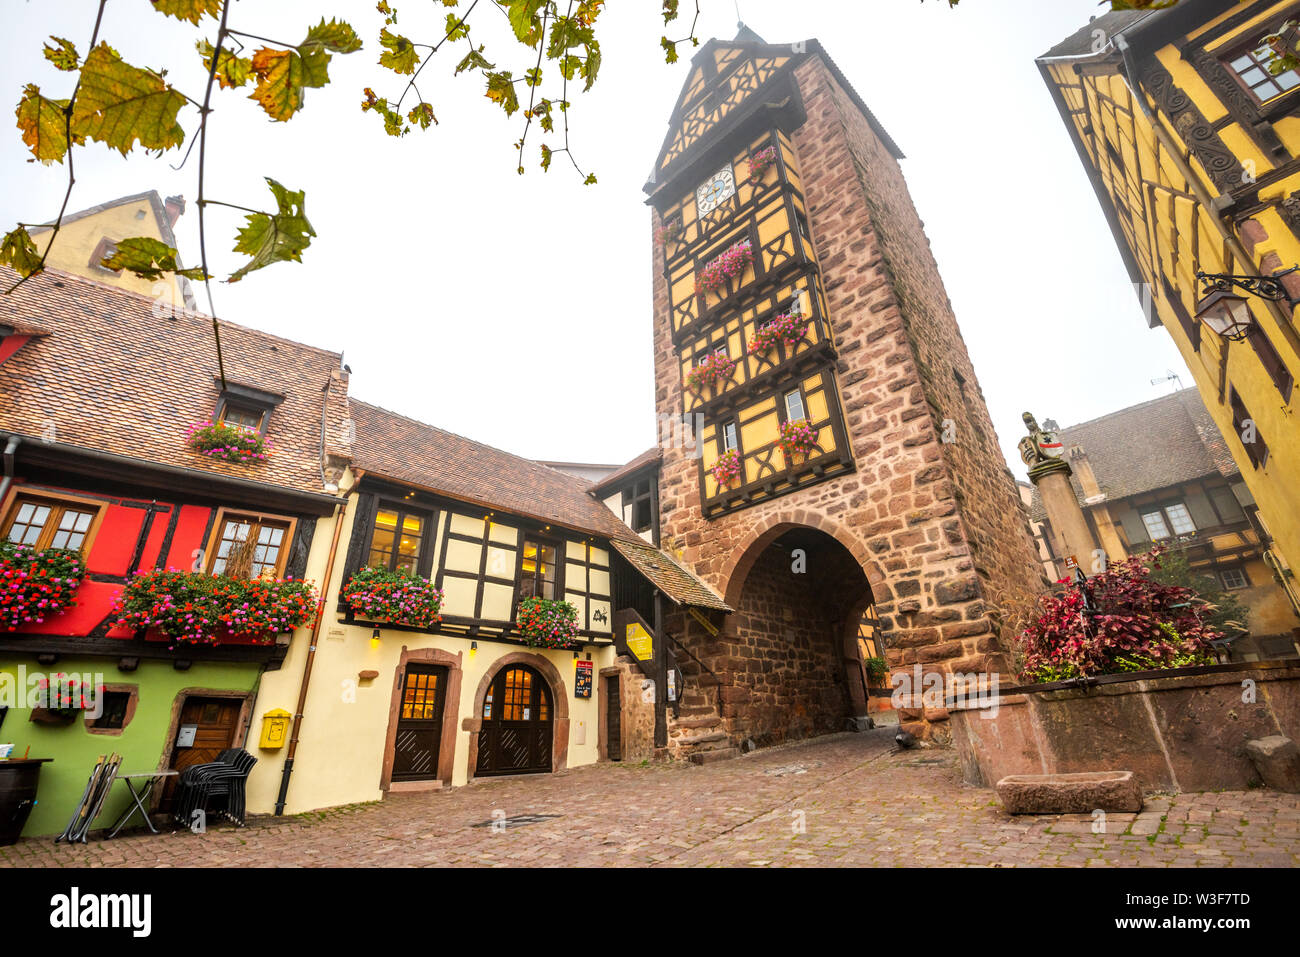 Antigua puerta de la ciudad de la aldea con timberwork Riquewihr, Ruta del Vino de Alsacia, Francia, la histórica torre Dolder y bien adornados de flores Foto de stock